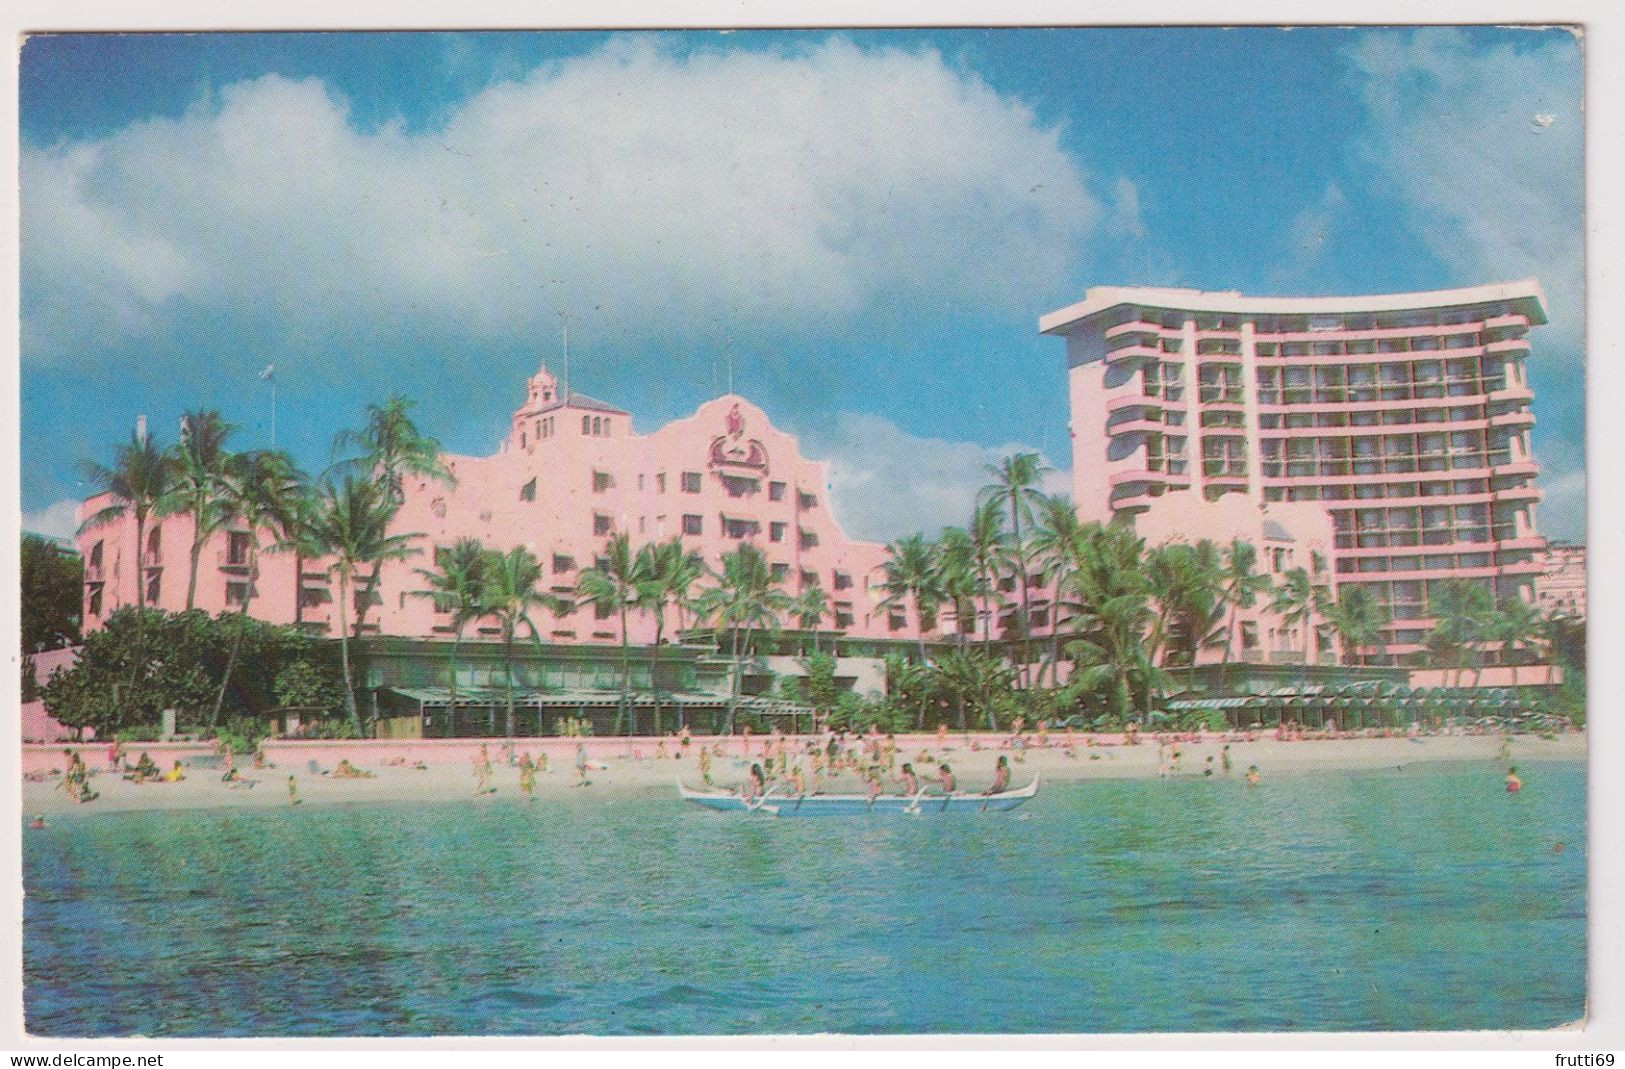 AK 197728 USA - Hawaii - Waikiki - The Royal Hawaiian - Honolulu